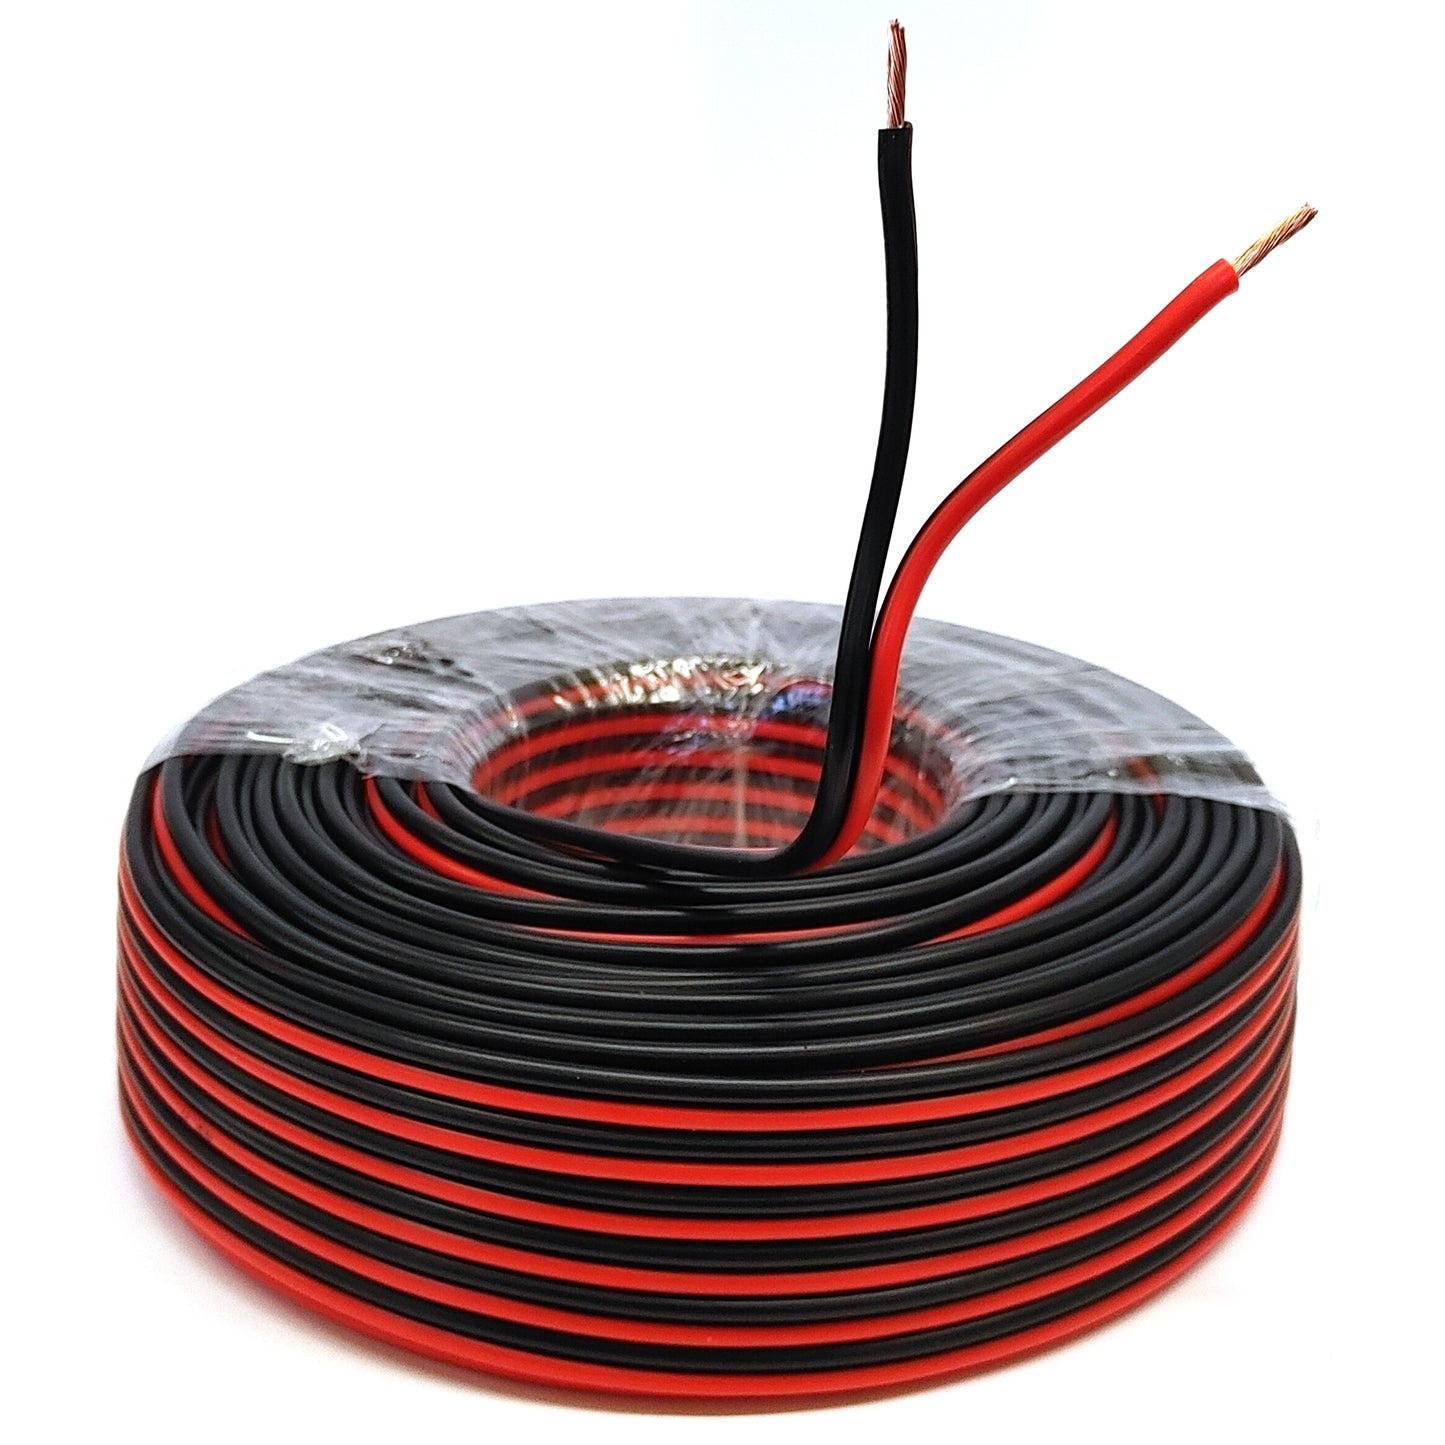 Lautsprecherkabel 50m Rot/Schwarz 4mm² Kupfer Audio Boxen Kabel Litze